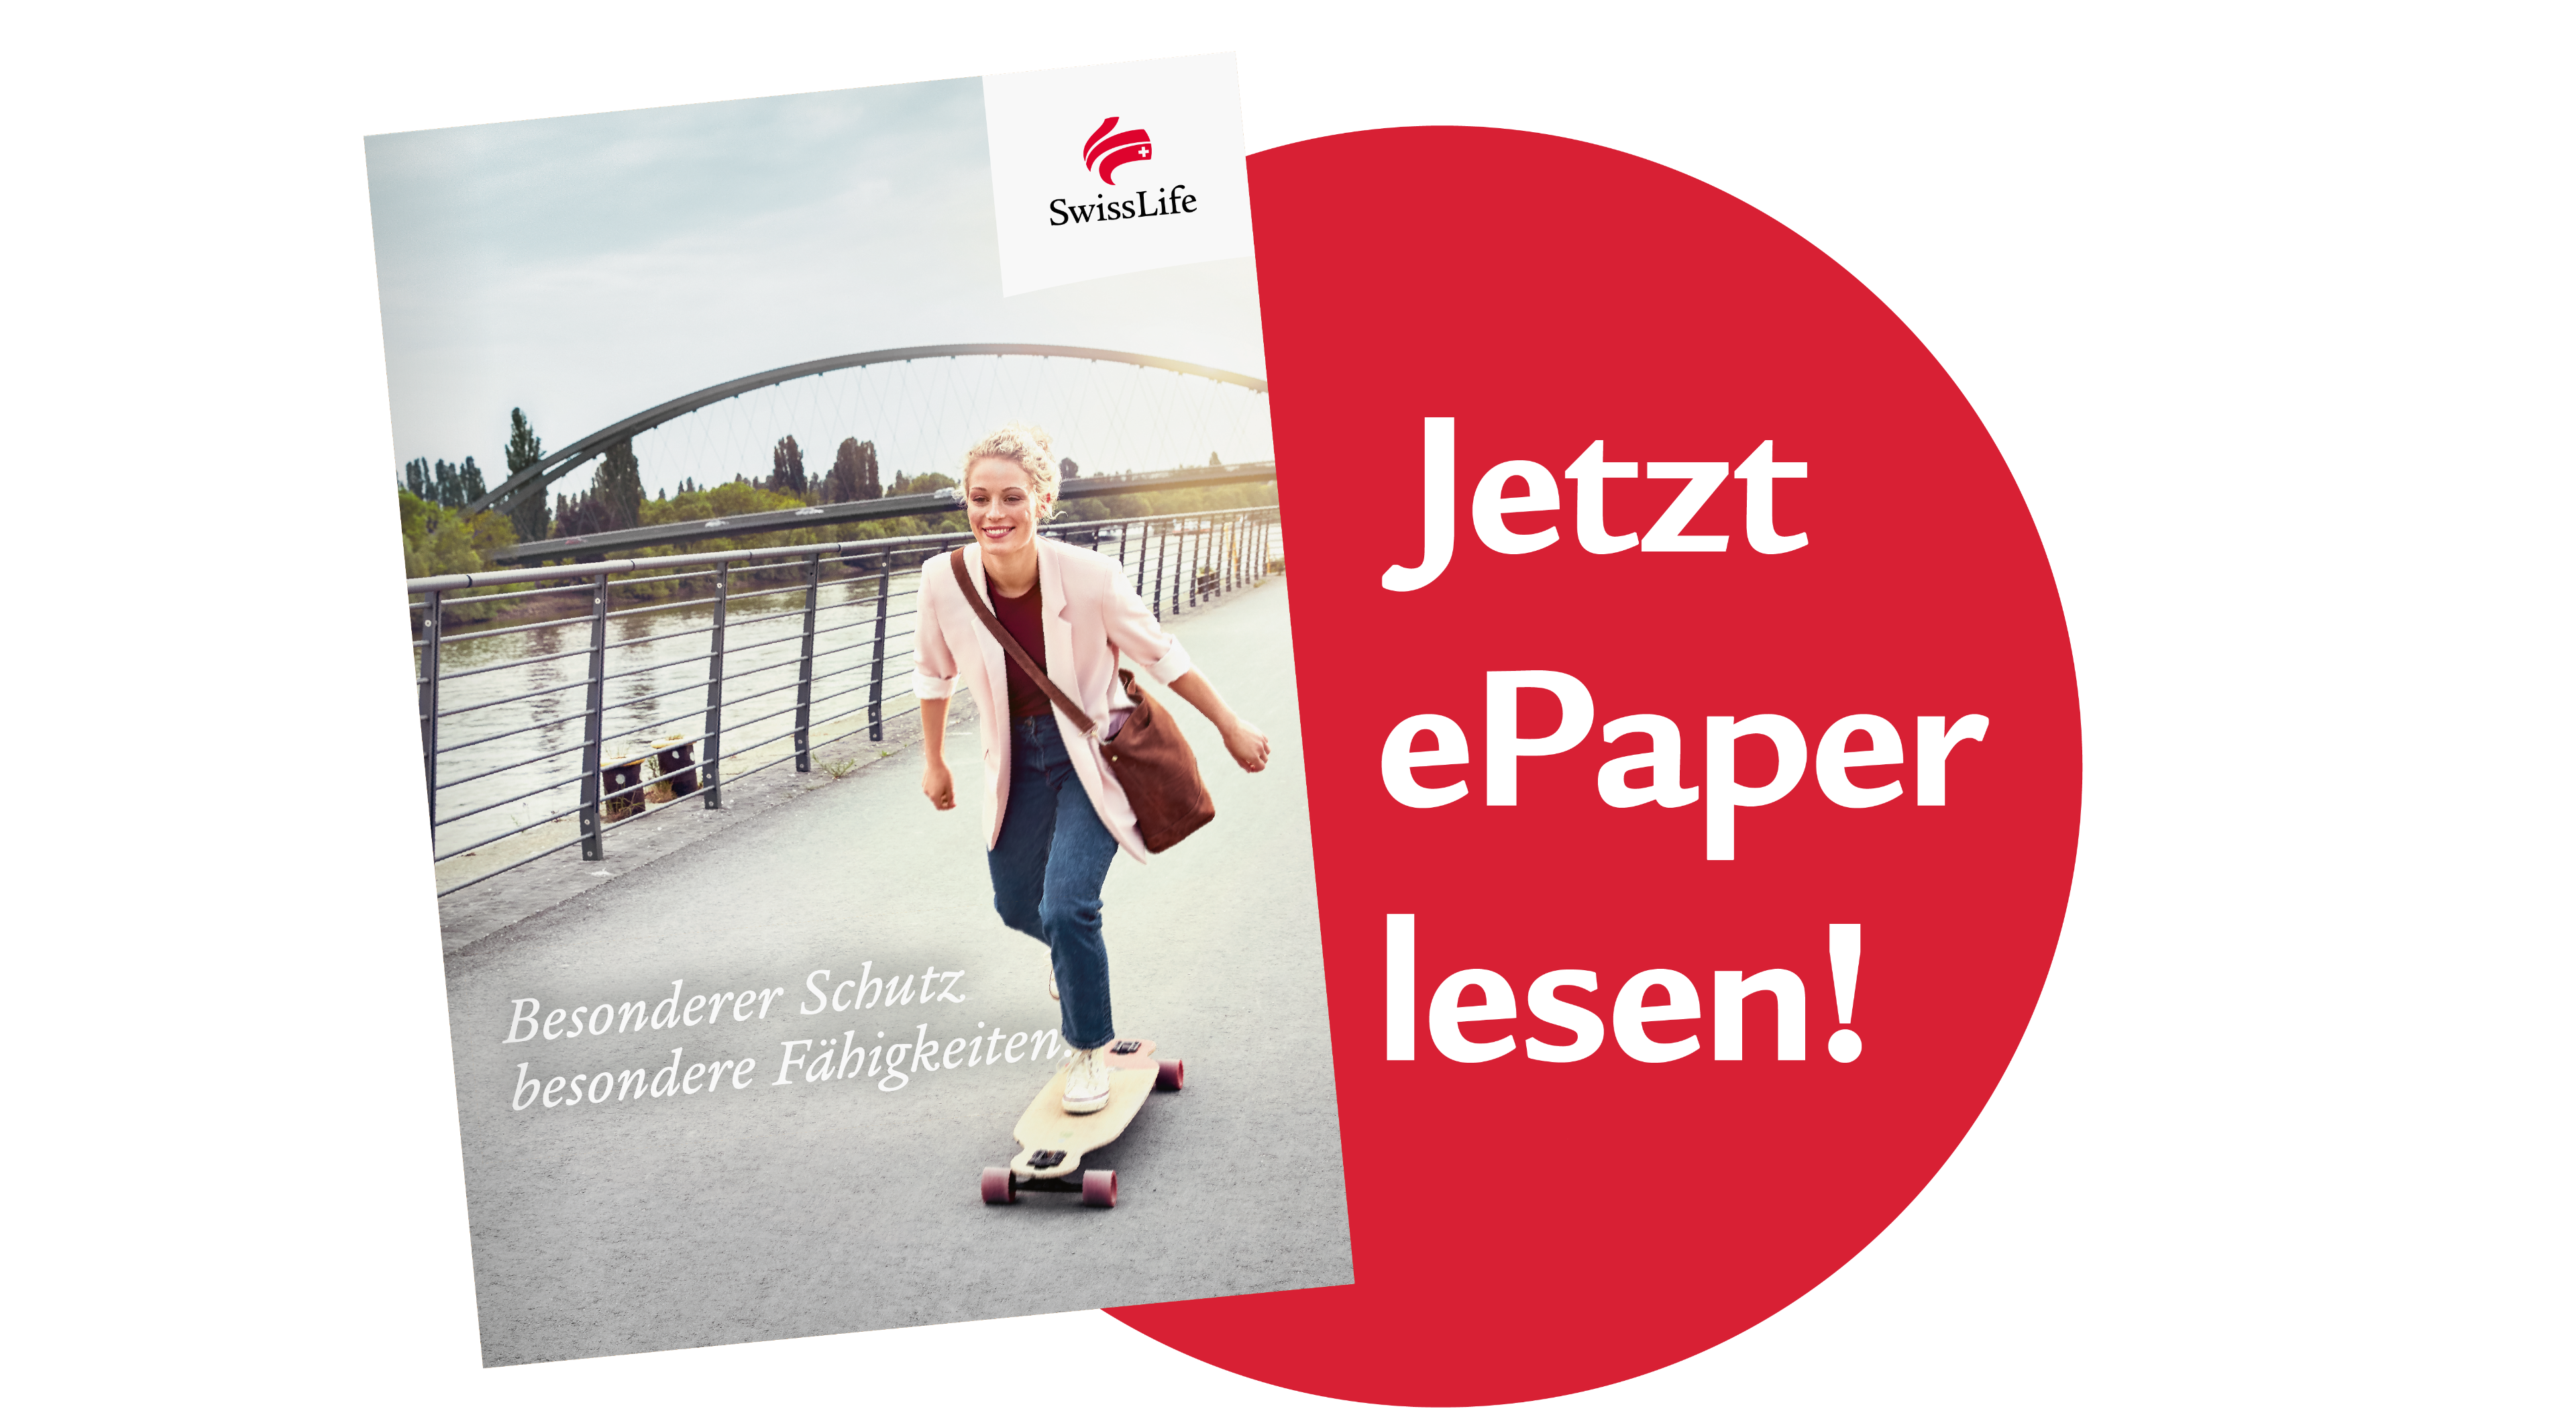 Unsere Onlinebroschüre erklärt einfach und verständlich die Vorteile des Swiss Life Vitalschutz